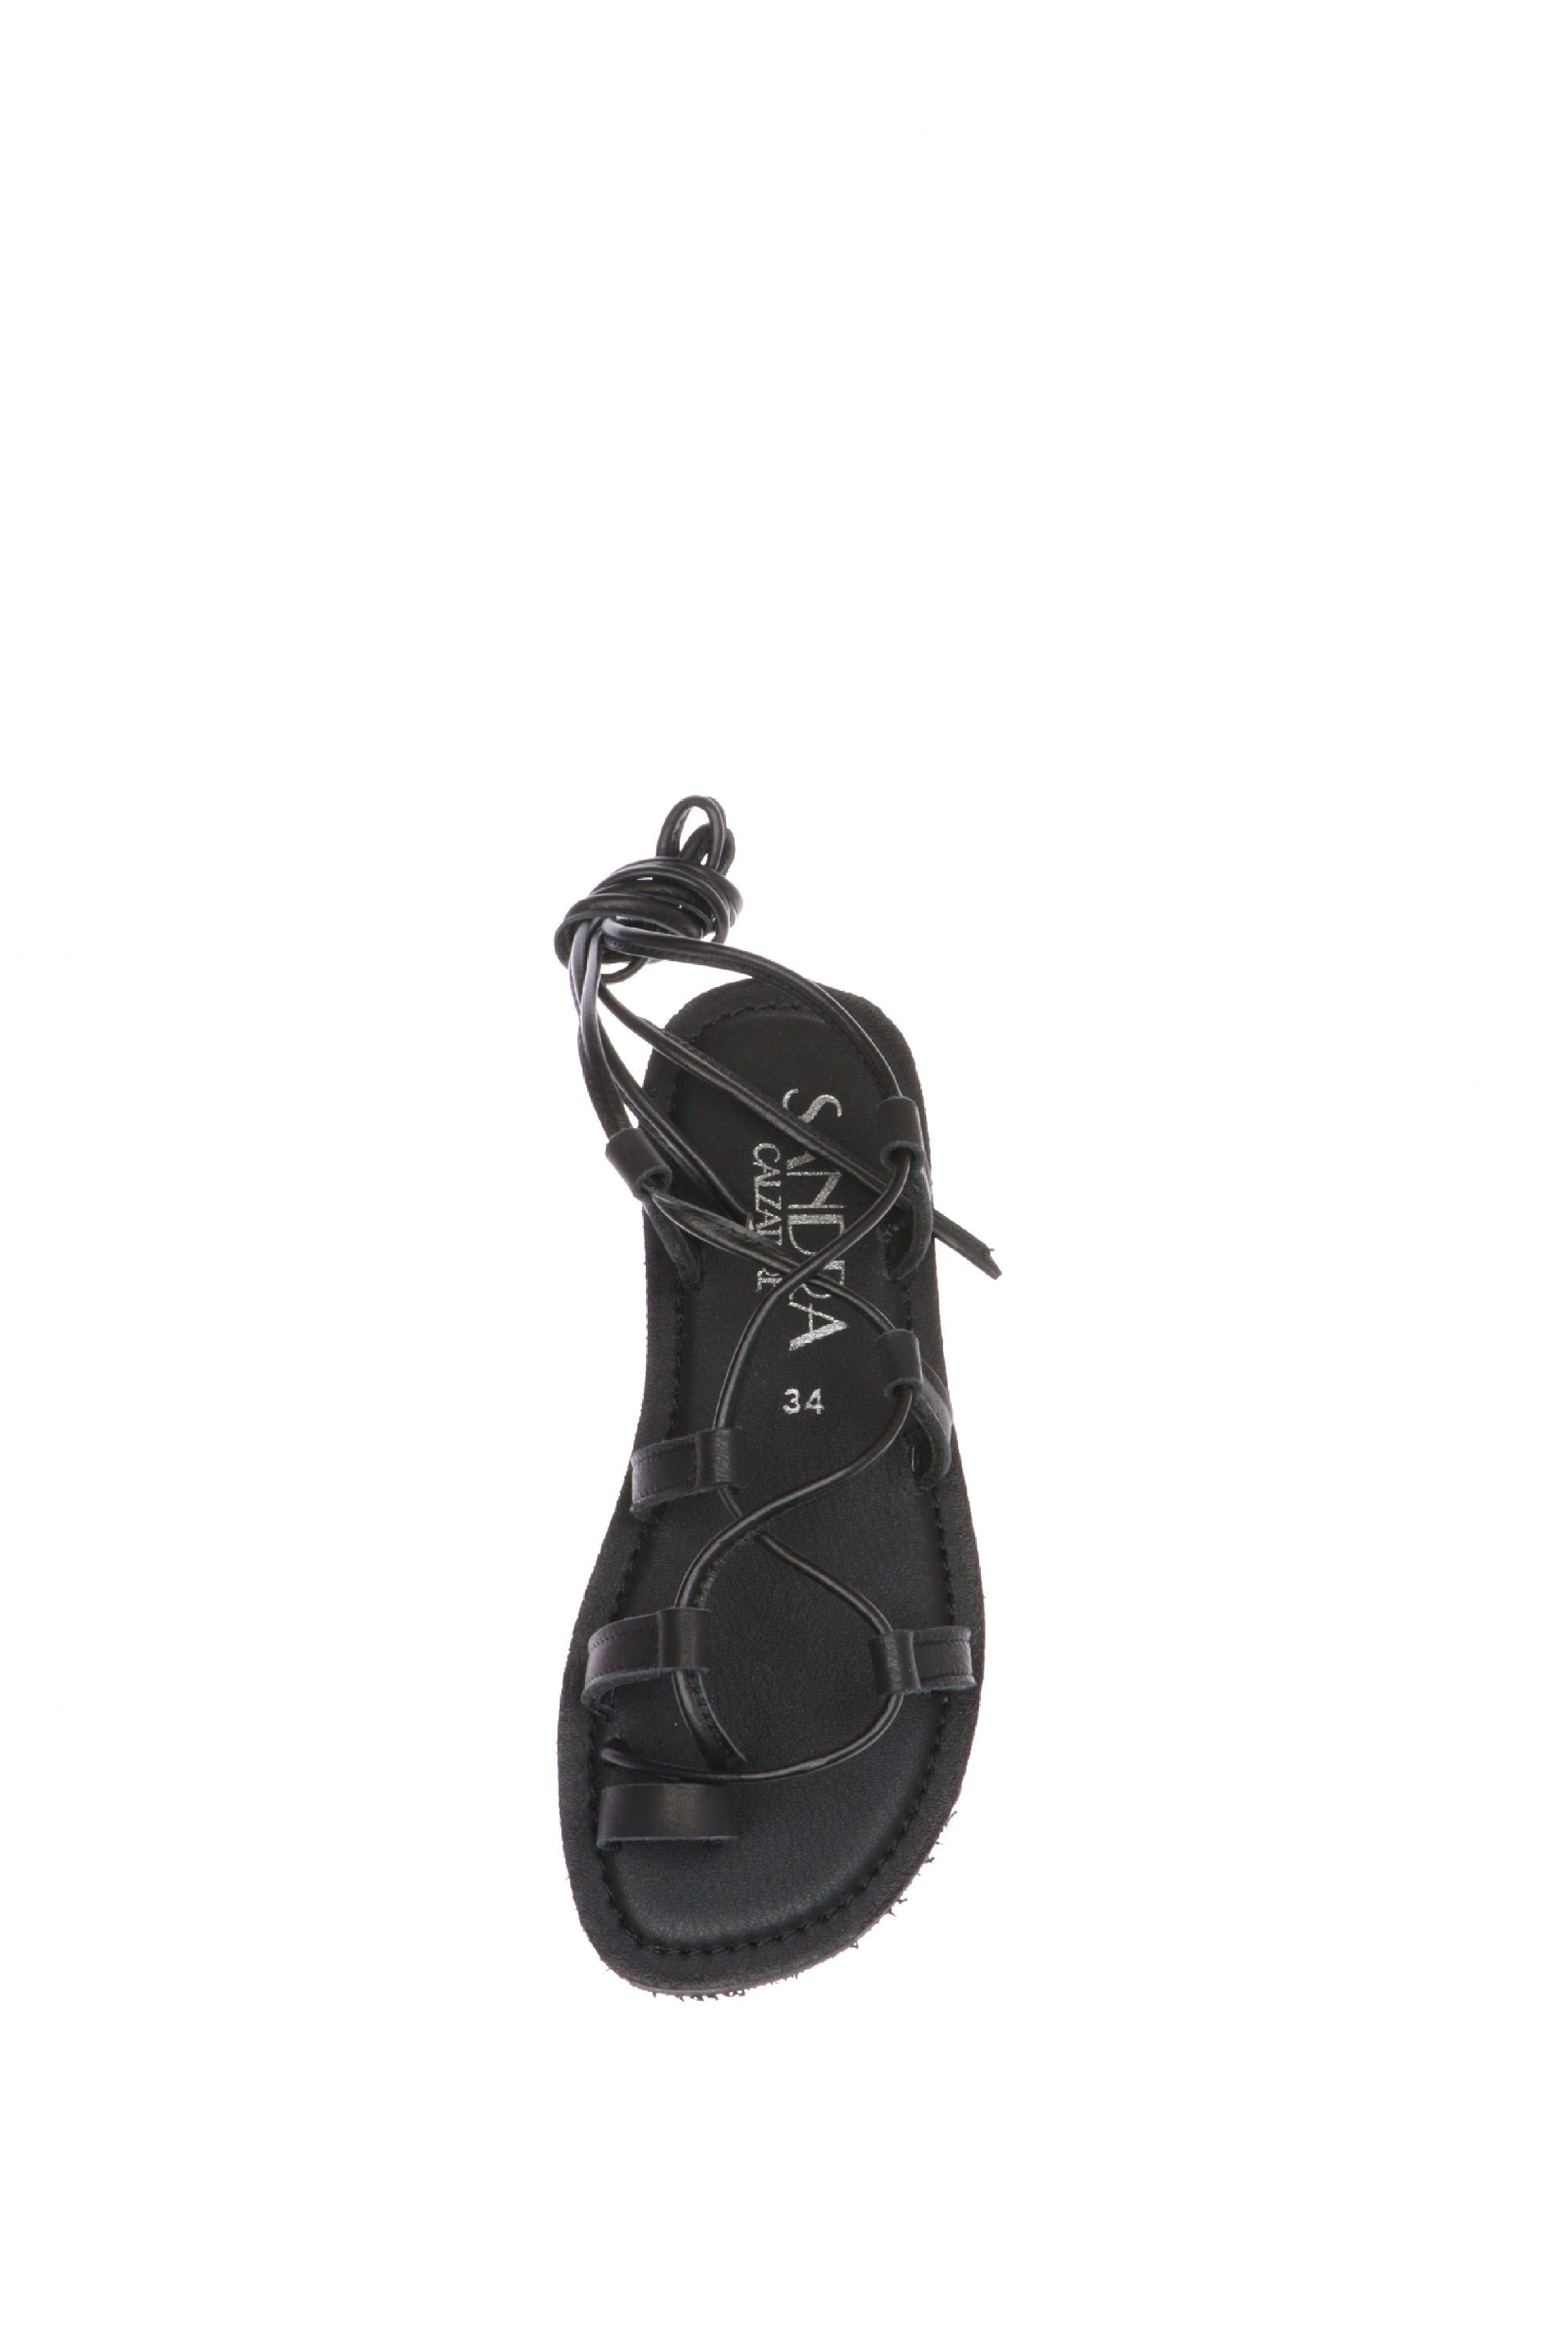 Sandalo salentino infradito nero allacciato Sandra Calzature 817